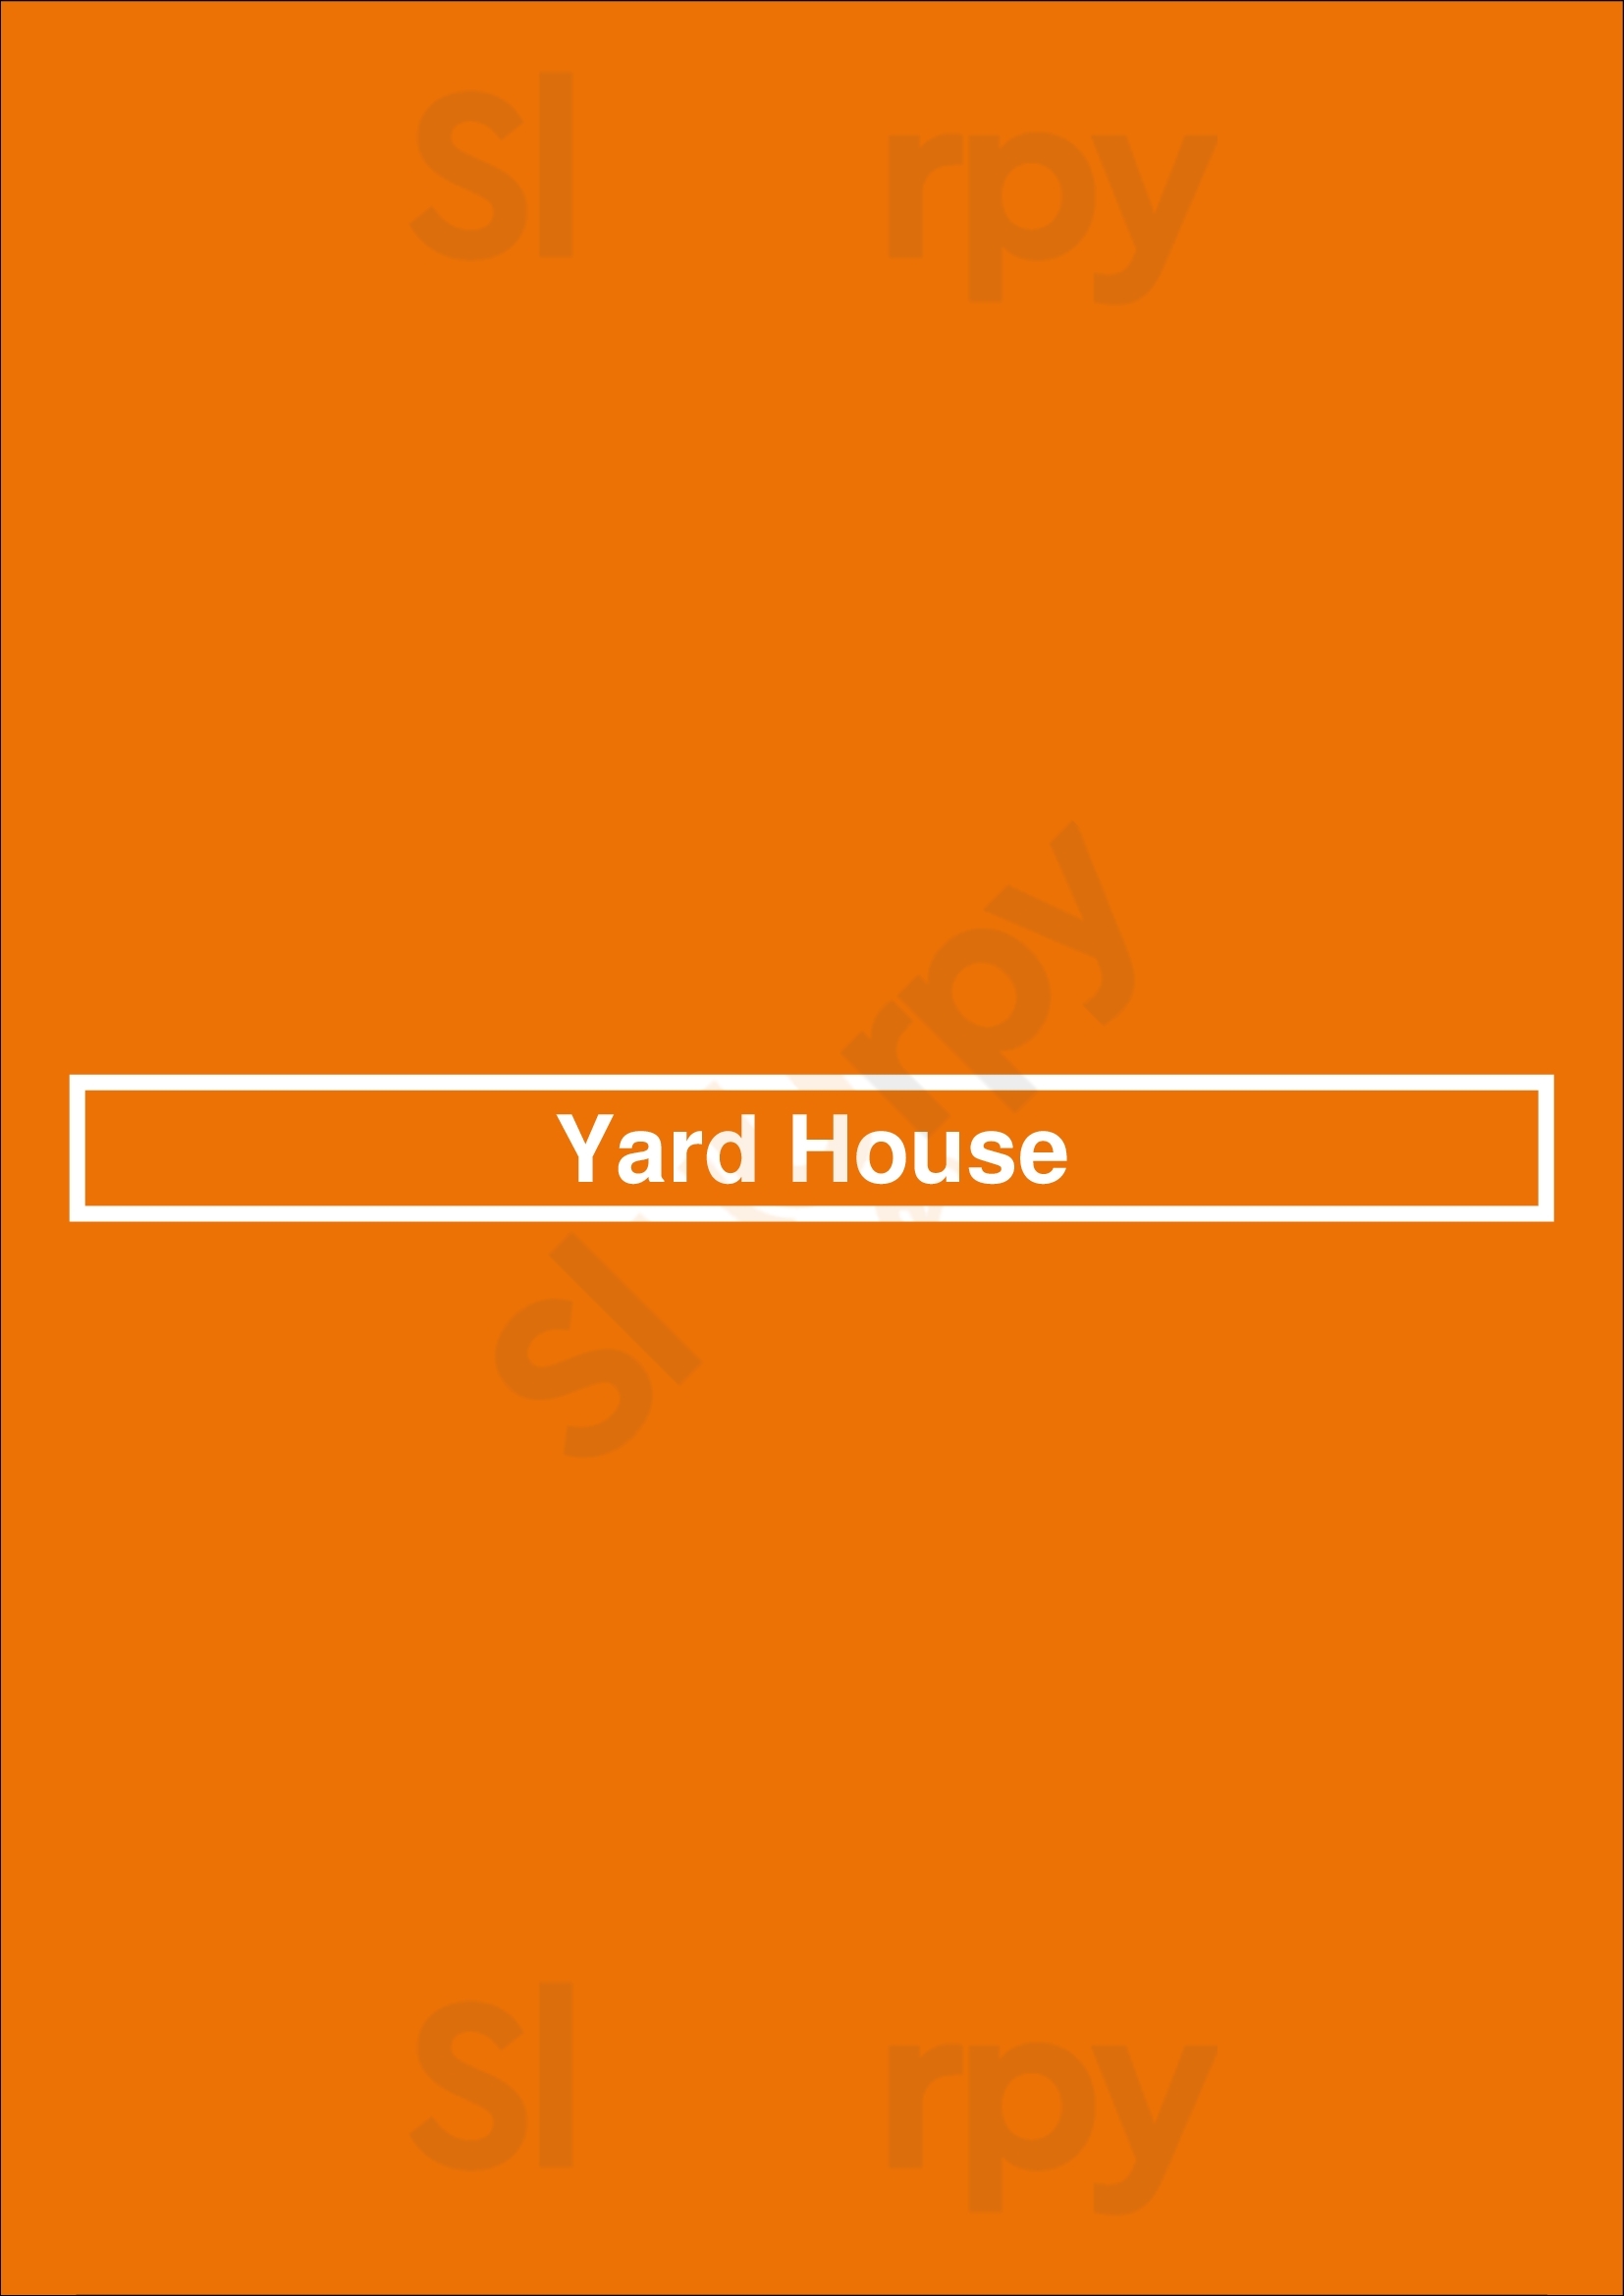 Yard House Kansas City Menu - 1